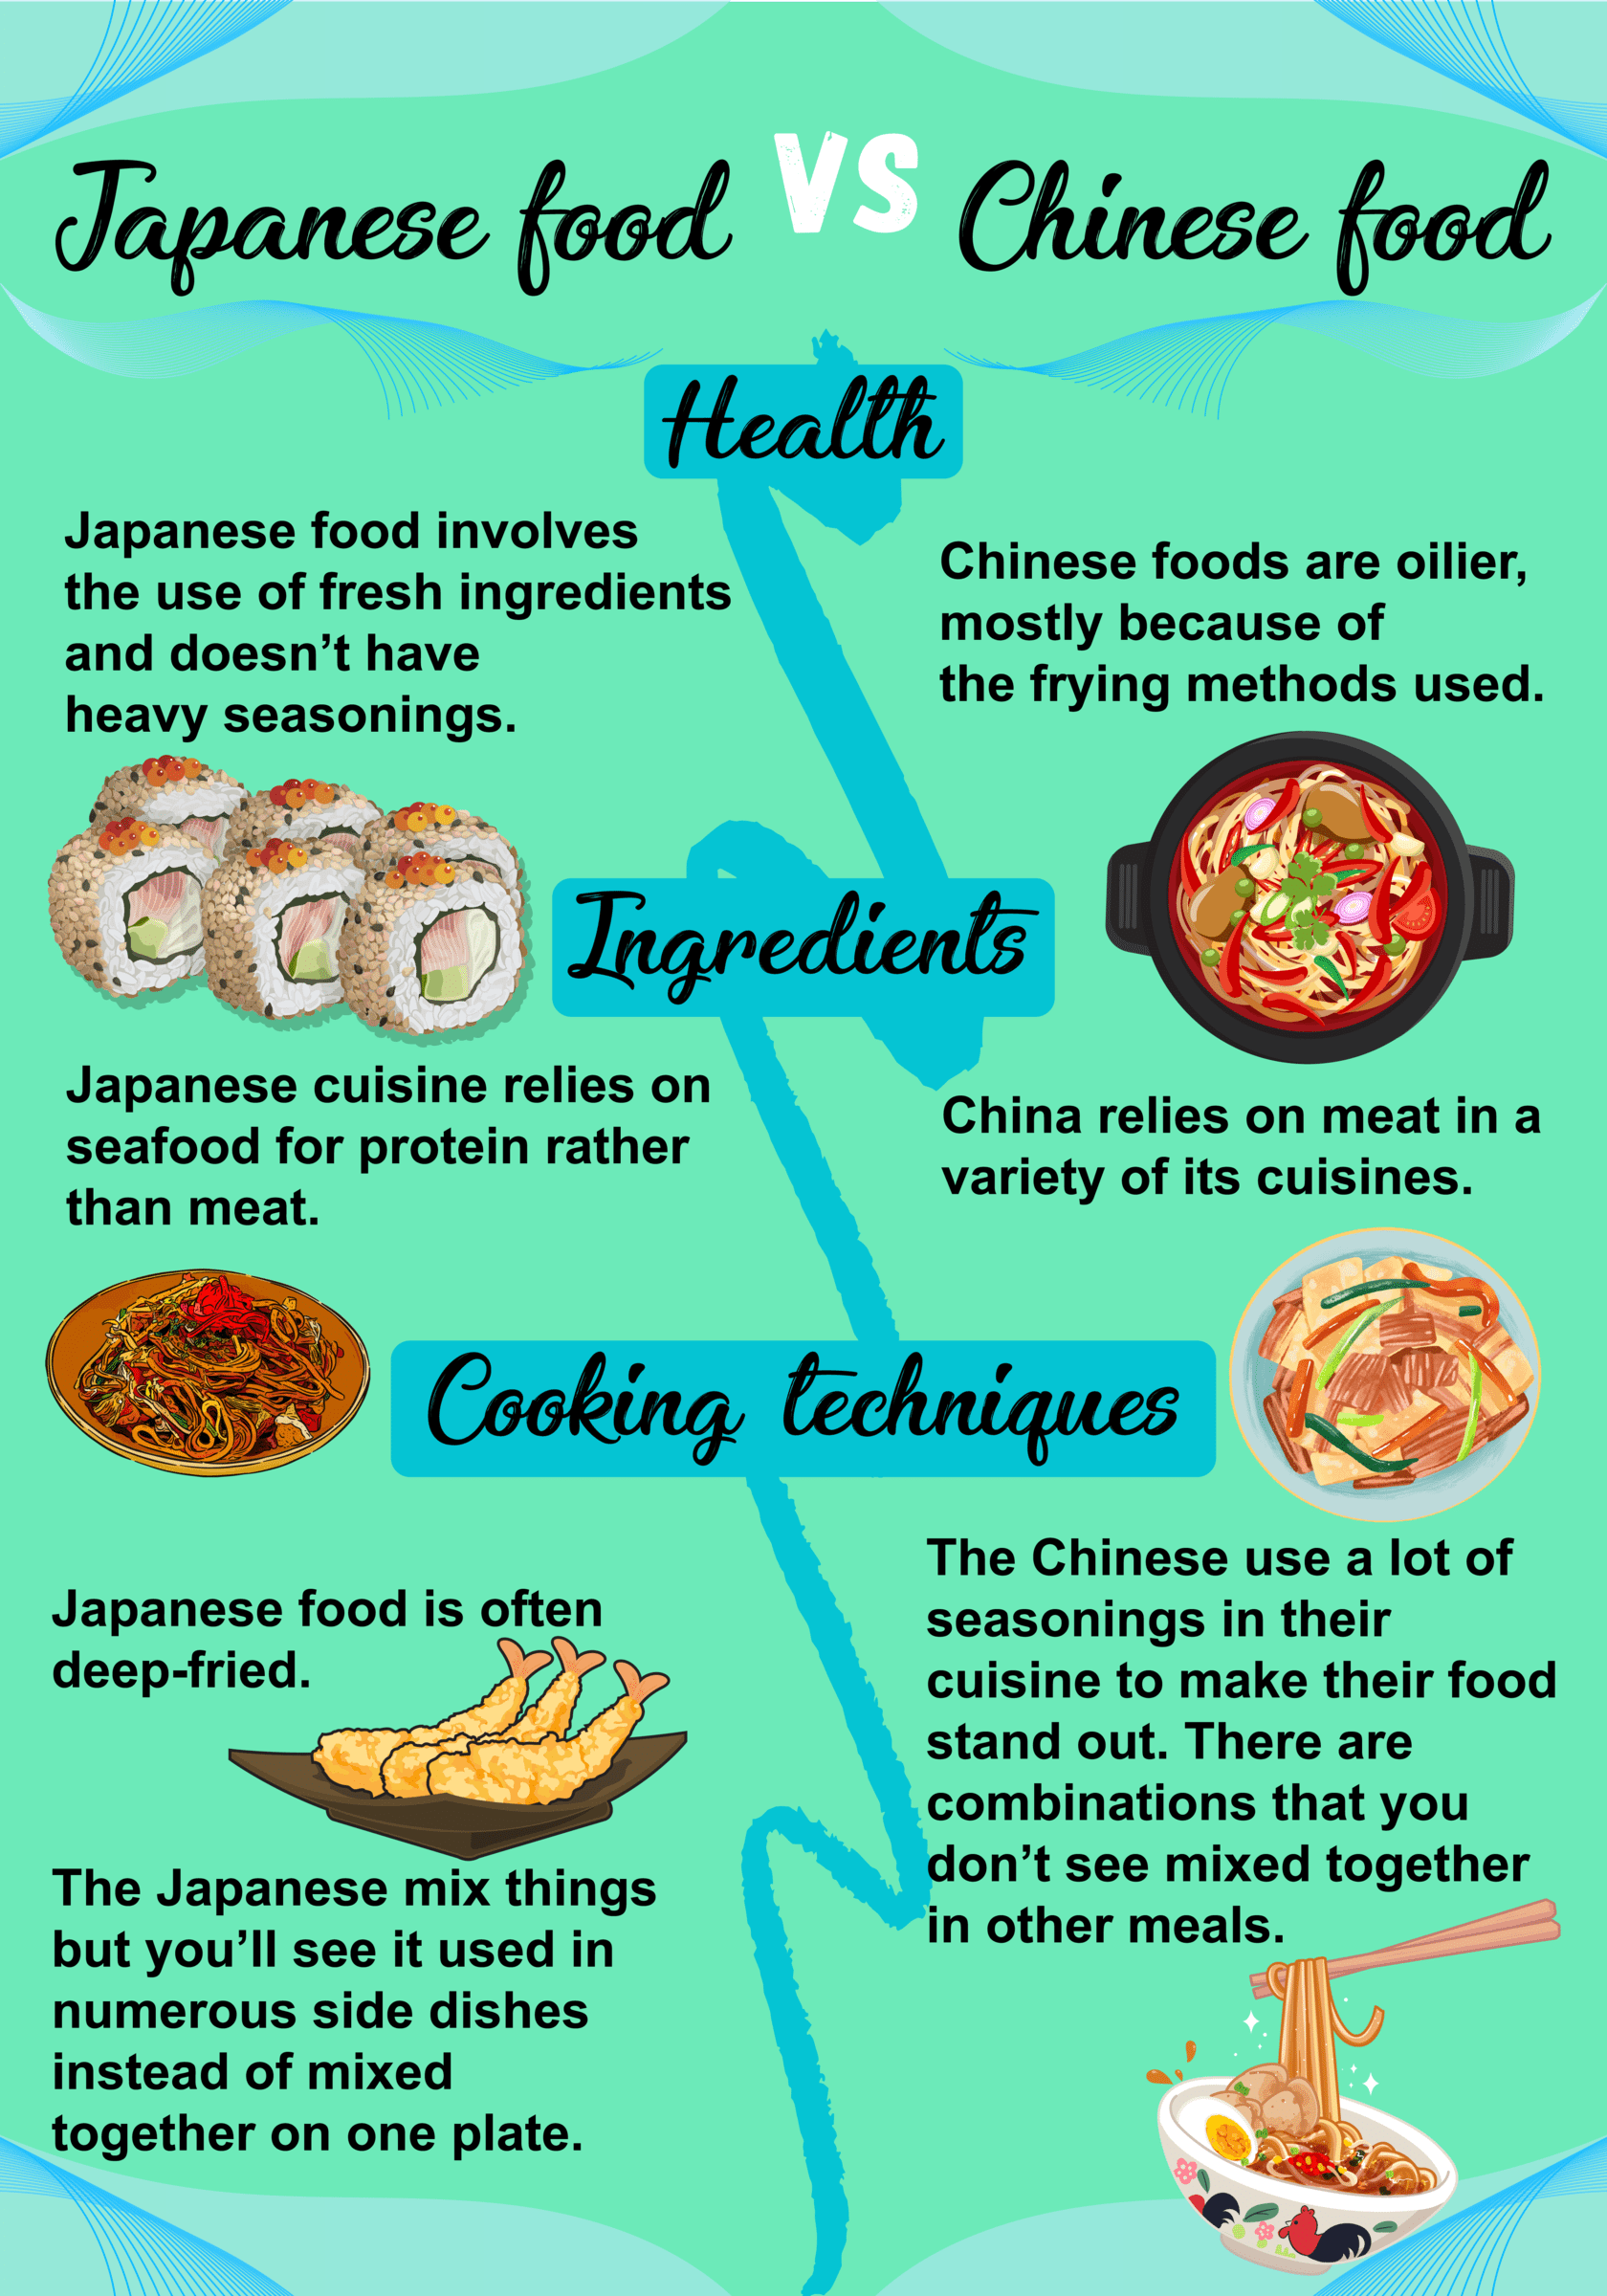 อินโฟกราฟิกเปรียบเทียบอาหารญี่ปุ่นกับอาหารจีน